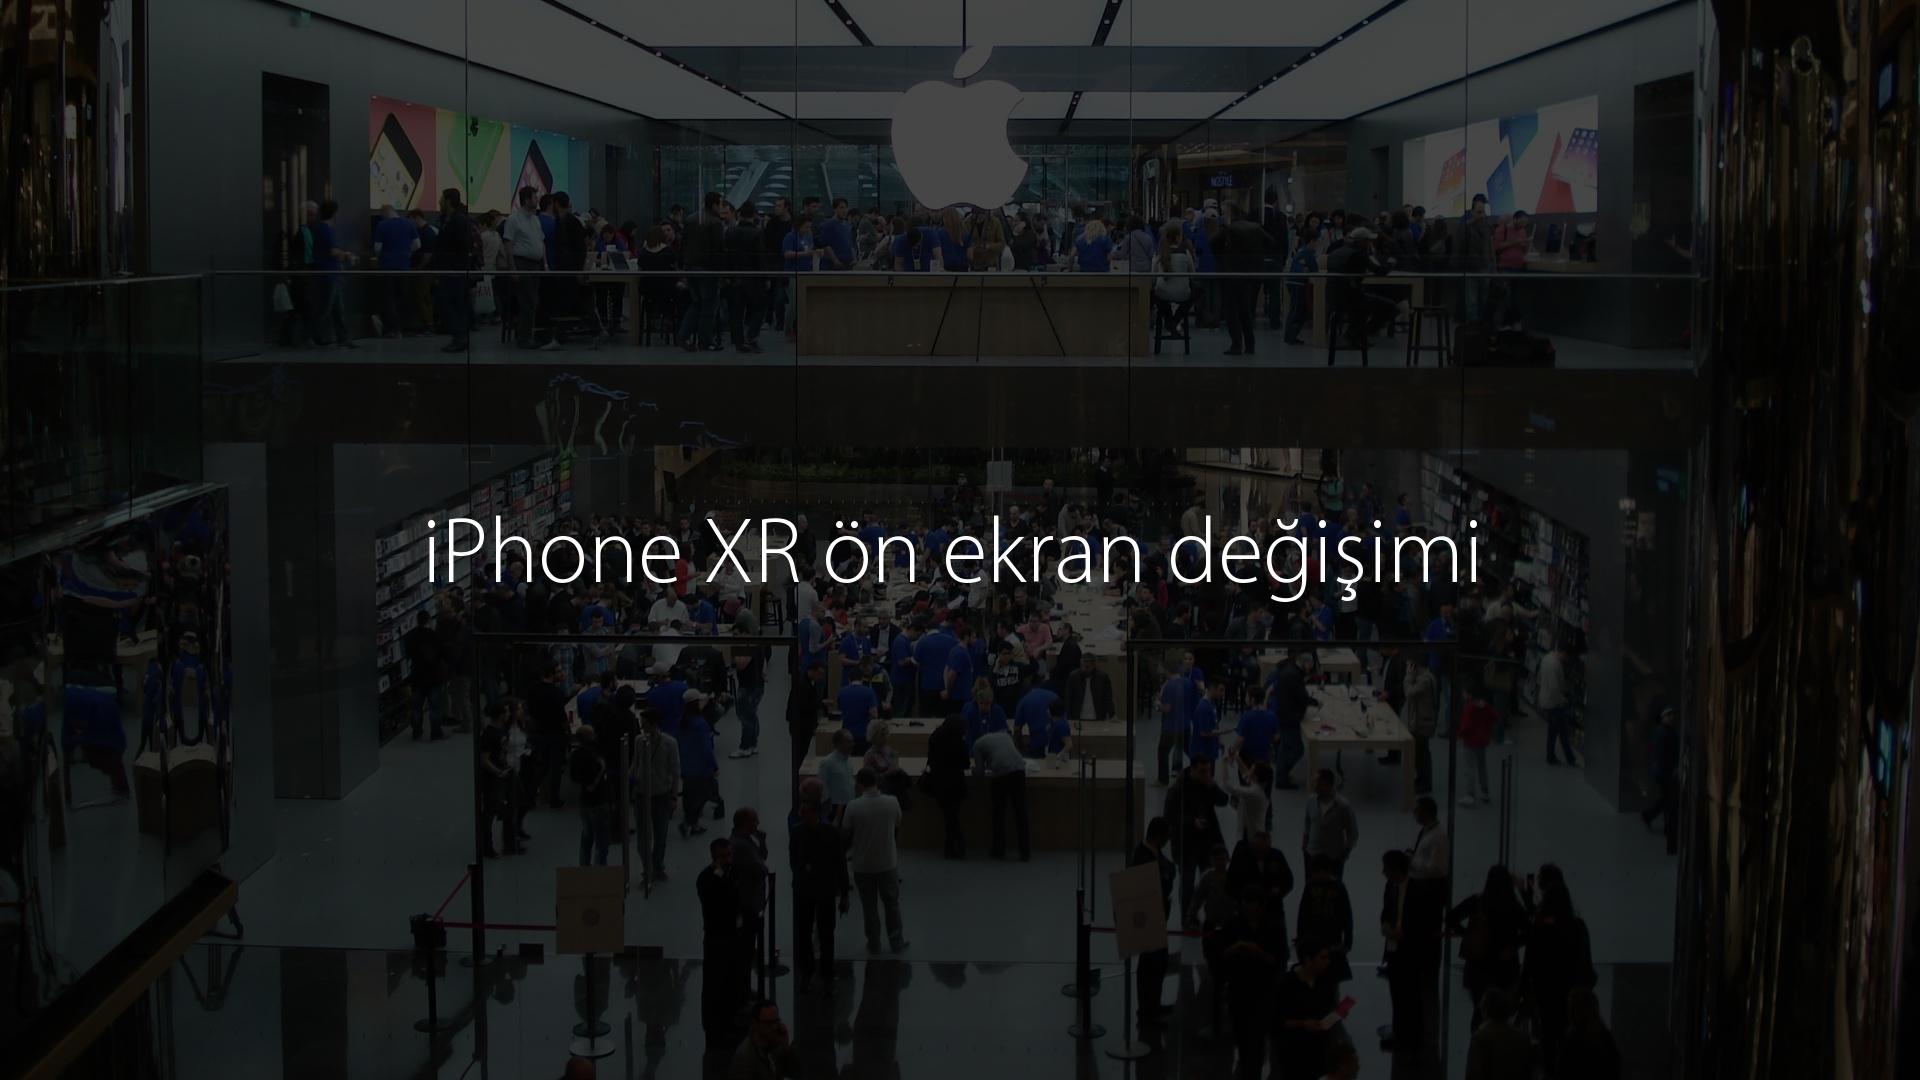 iPhone XR ön ekran değişimi 